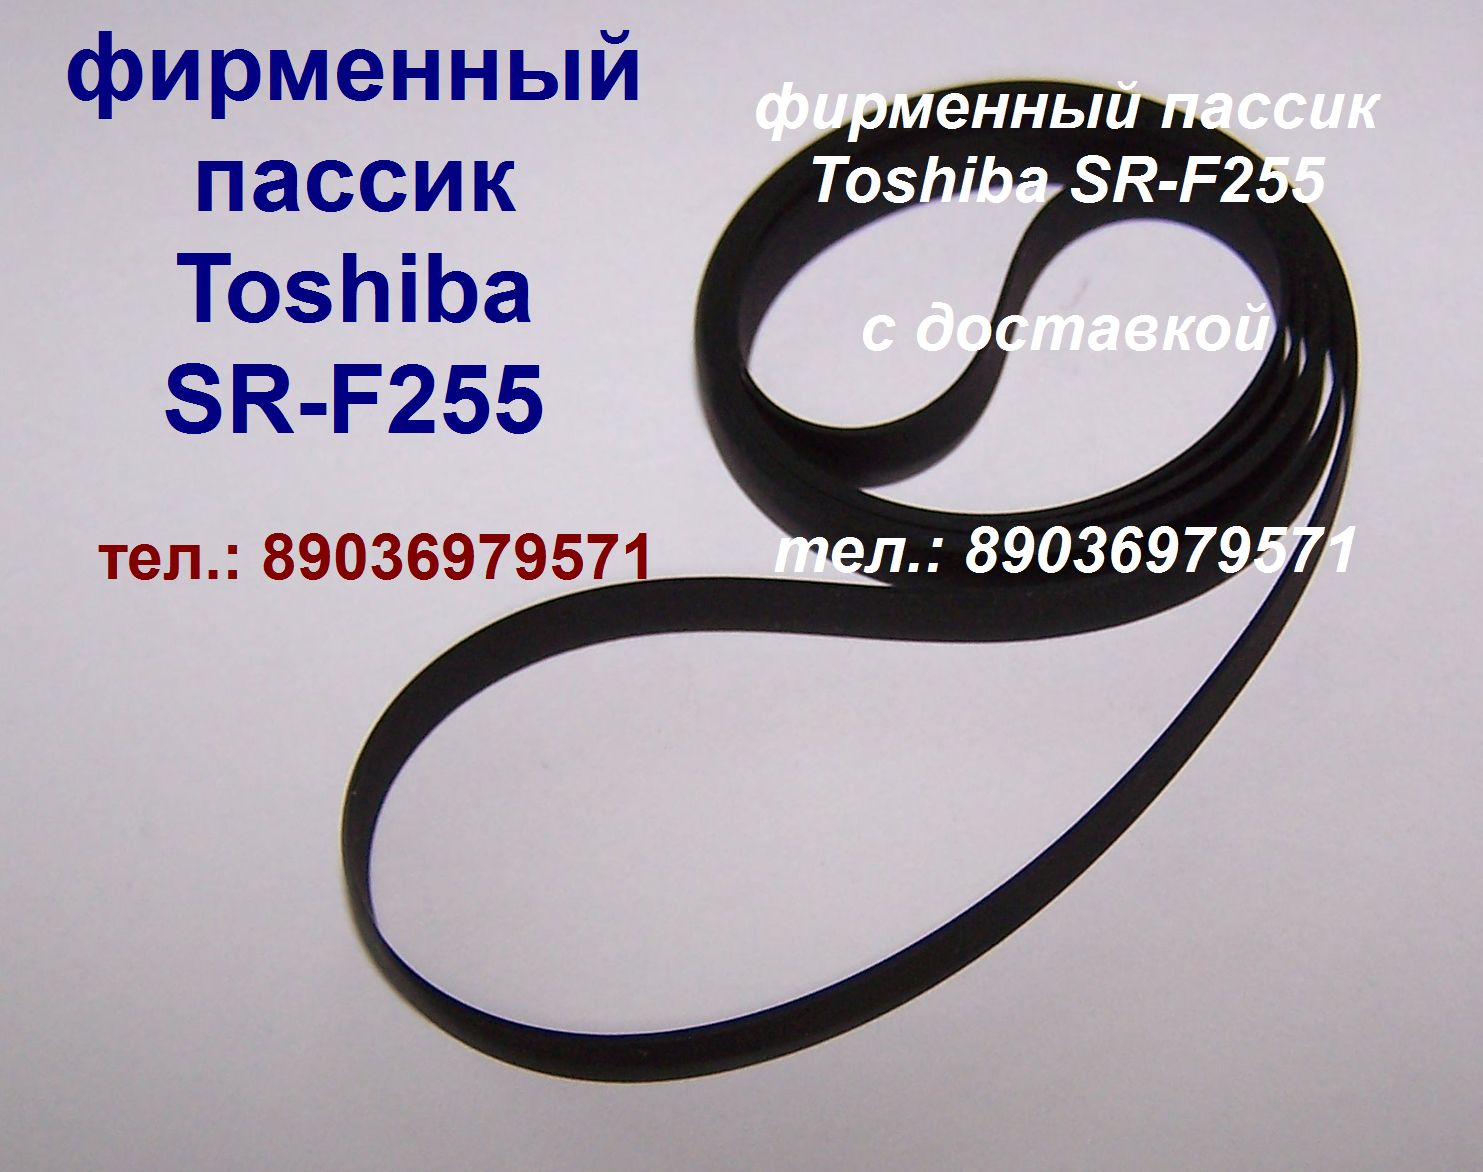 Фирменные пассики пассик для Toshiba SR-250 SR-F255 SR-B20 SR-B30F SR-A102 пасик ремень Toshiba Тошиба в городе Москва, фото 1, Другое